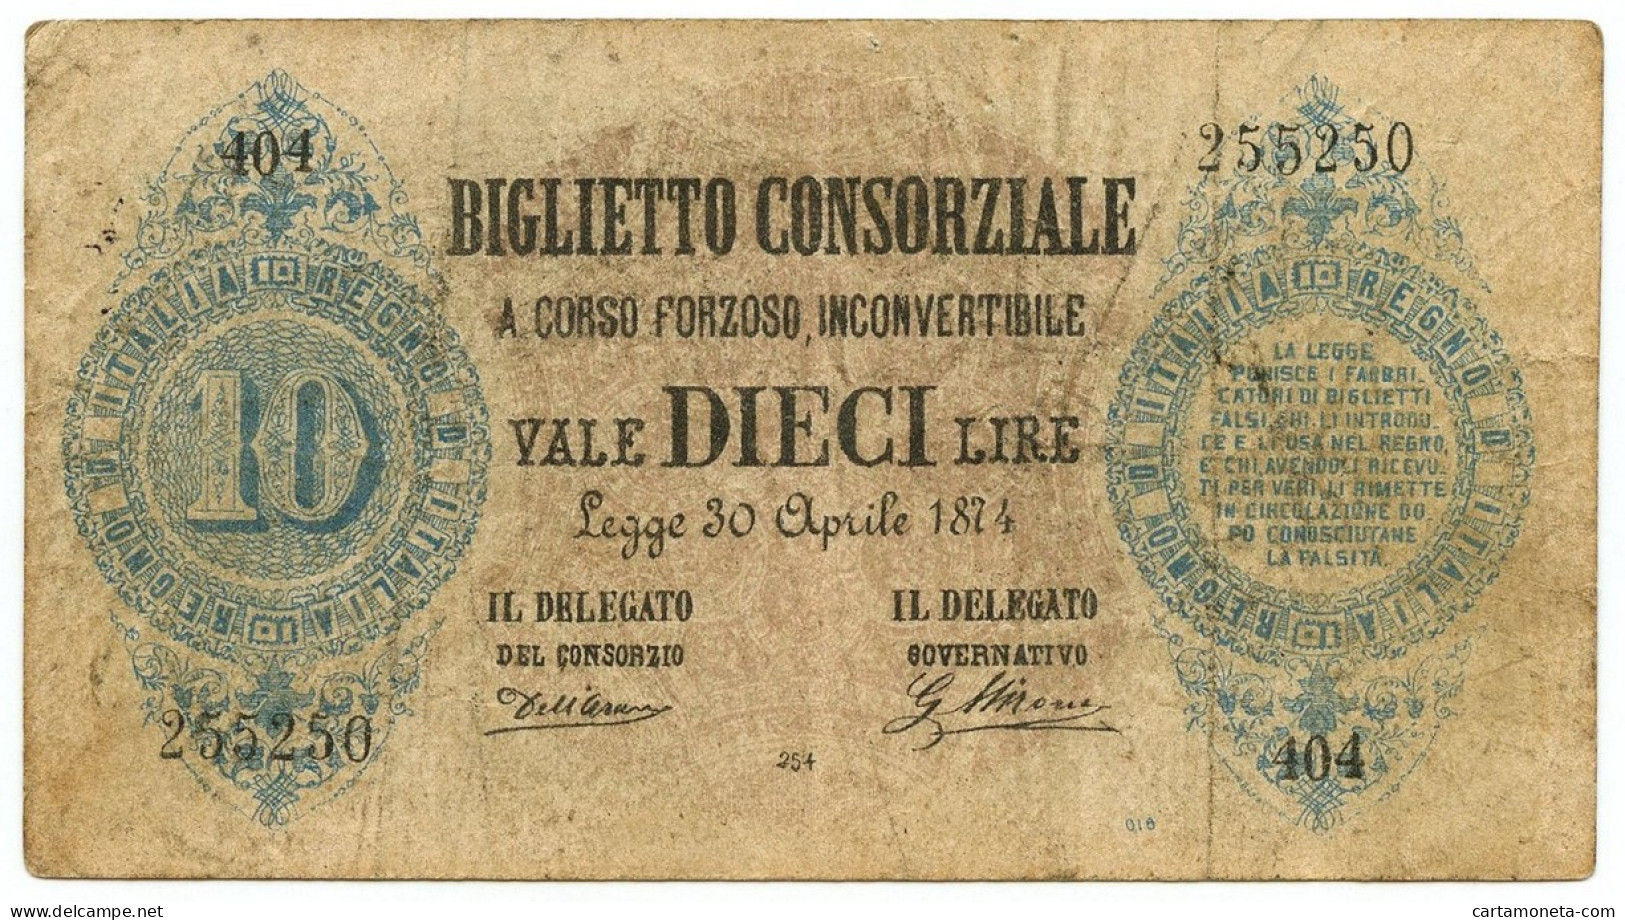 10 LIRE FALSO D'EPOCA BIGLIETTO CONSORZIALE REGNO D'ITALIA 30/04/1874 BB - [ 8] Fictifs & Specimens